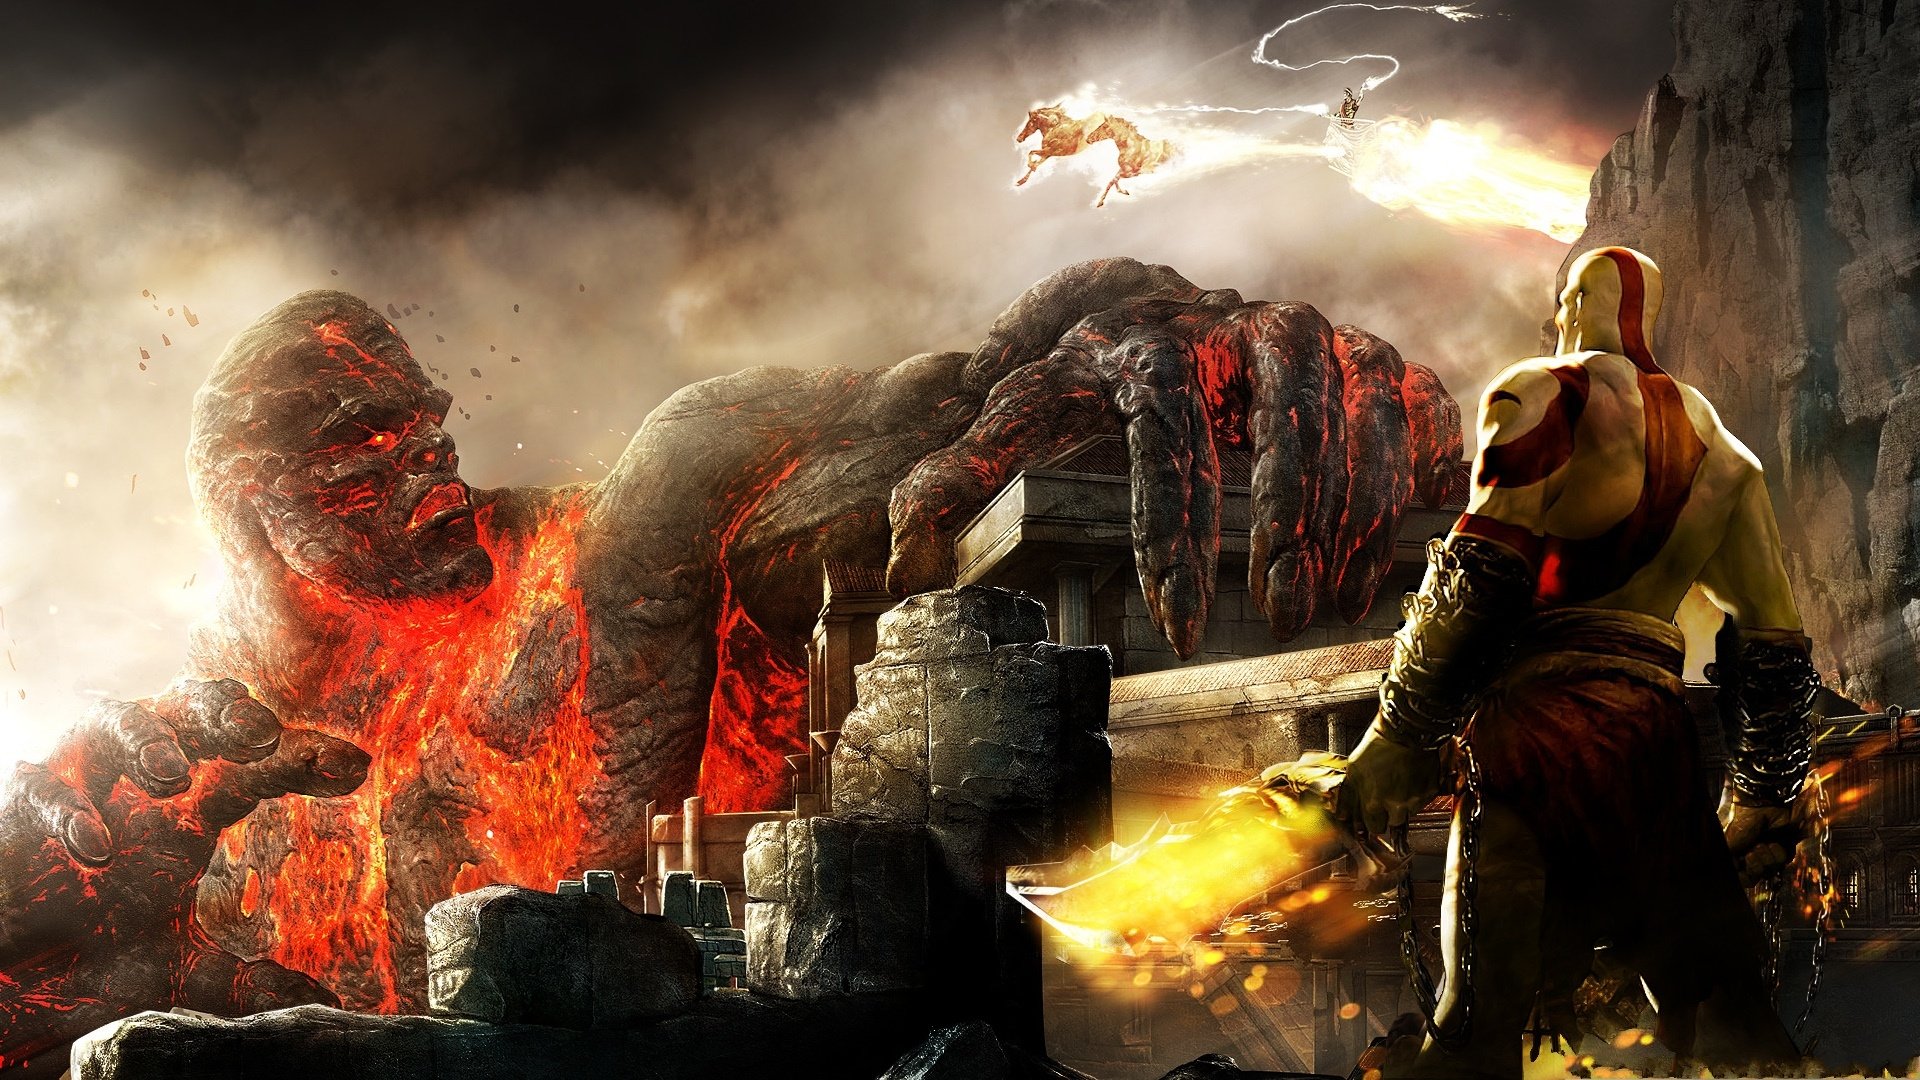 God of War Desktop Background. Awesome War Wallpaper, Gears of War Wallpaper and Epic War Wallpaper